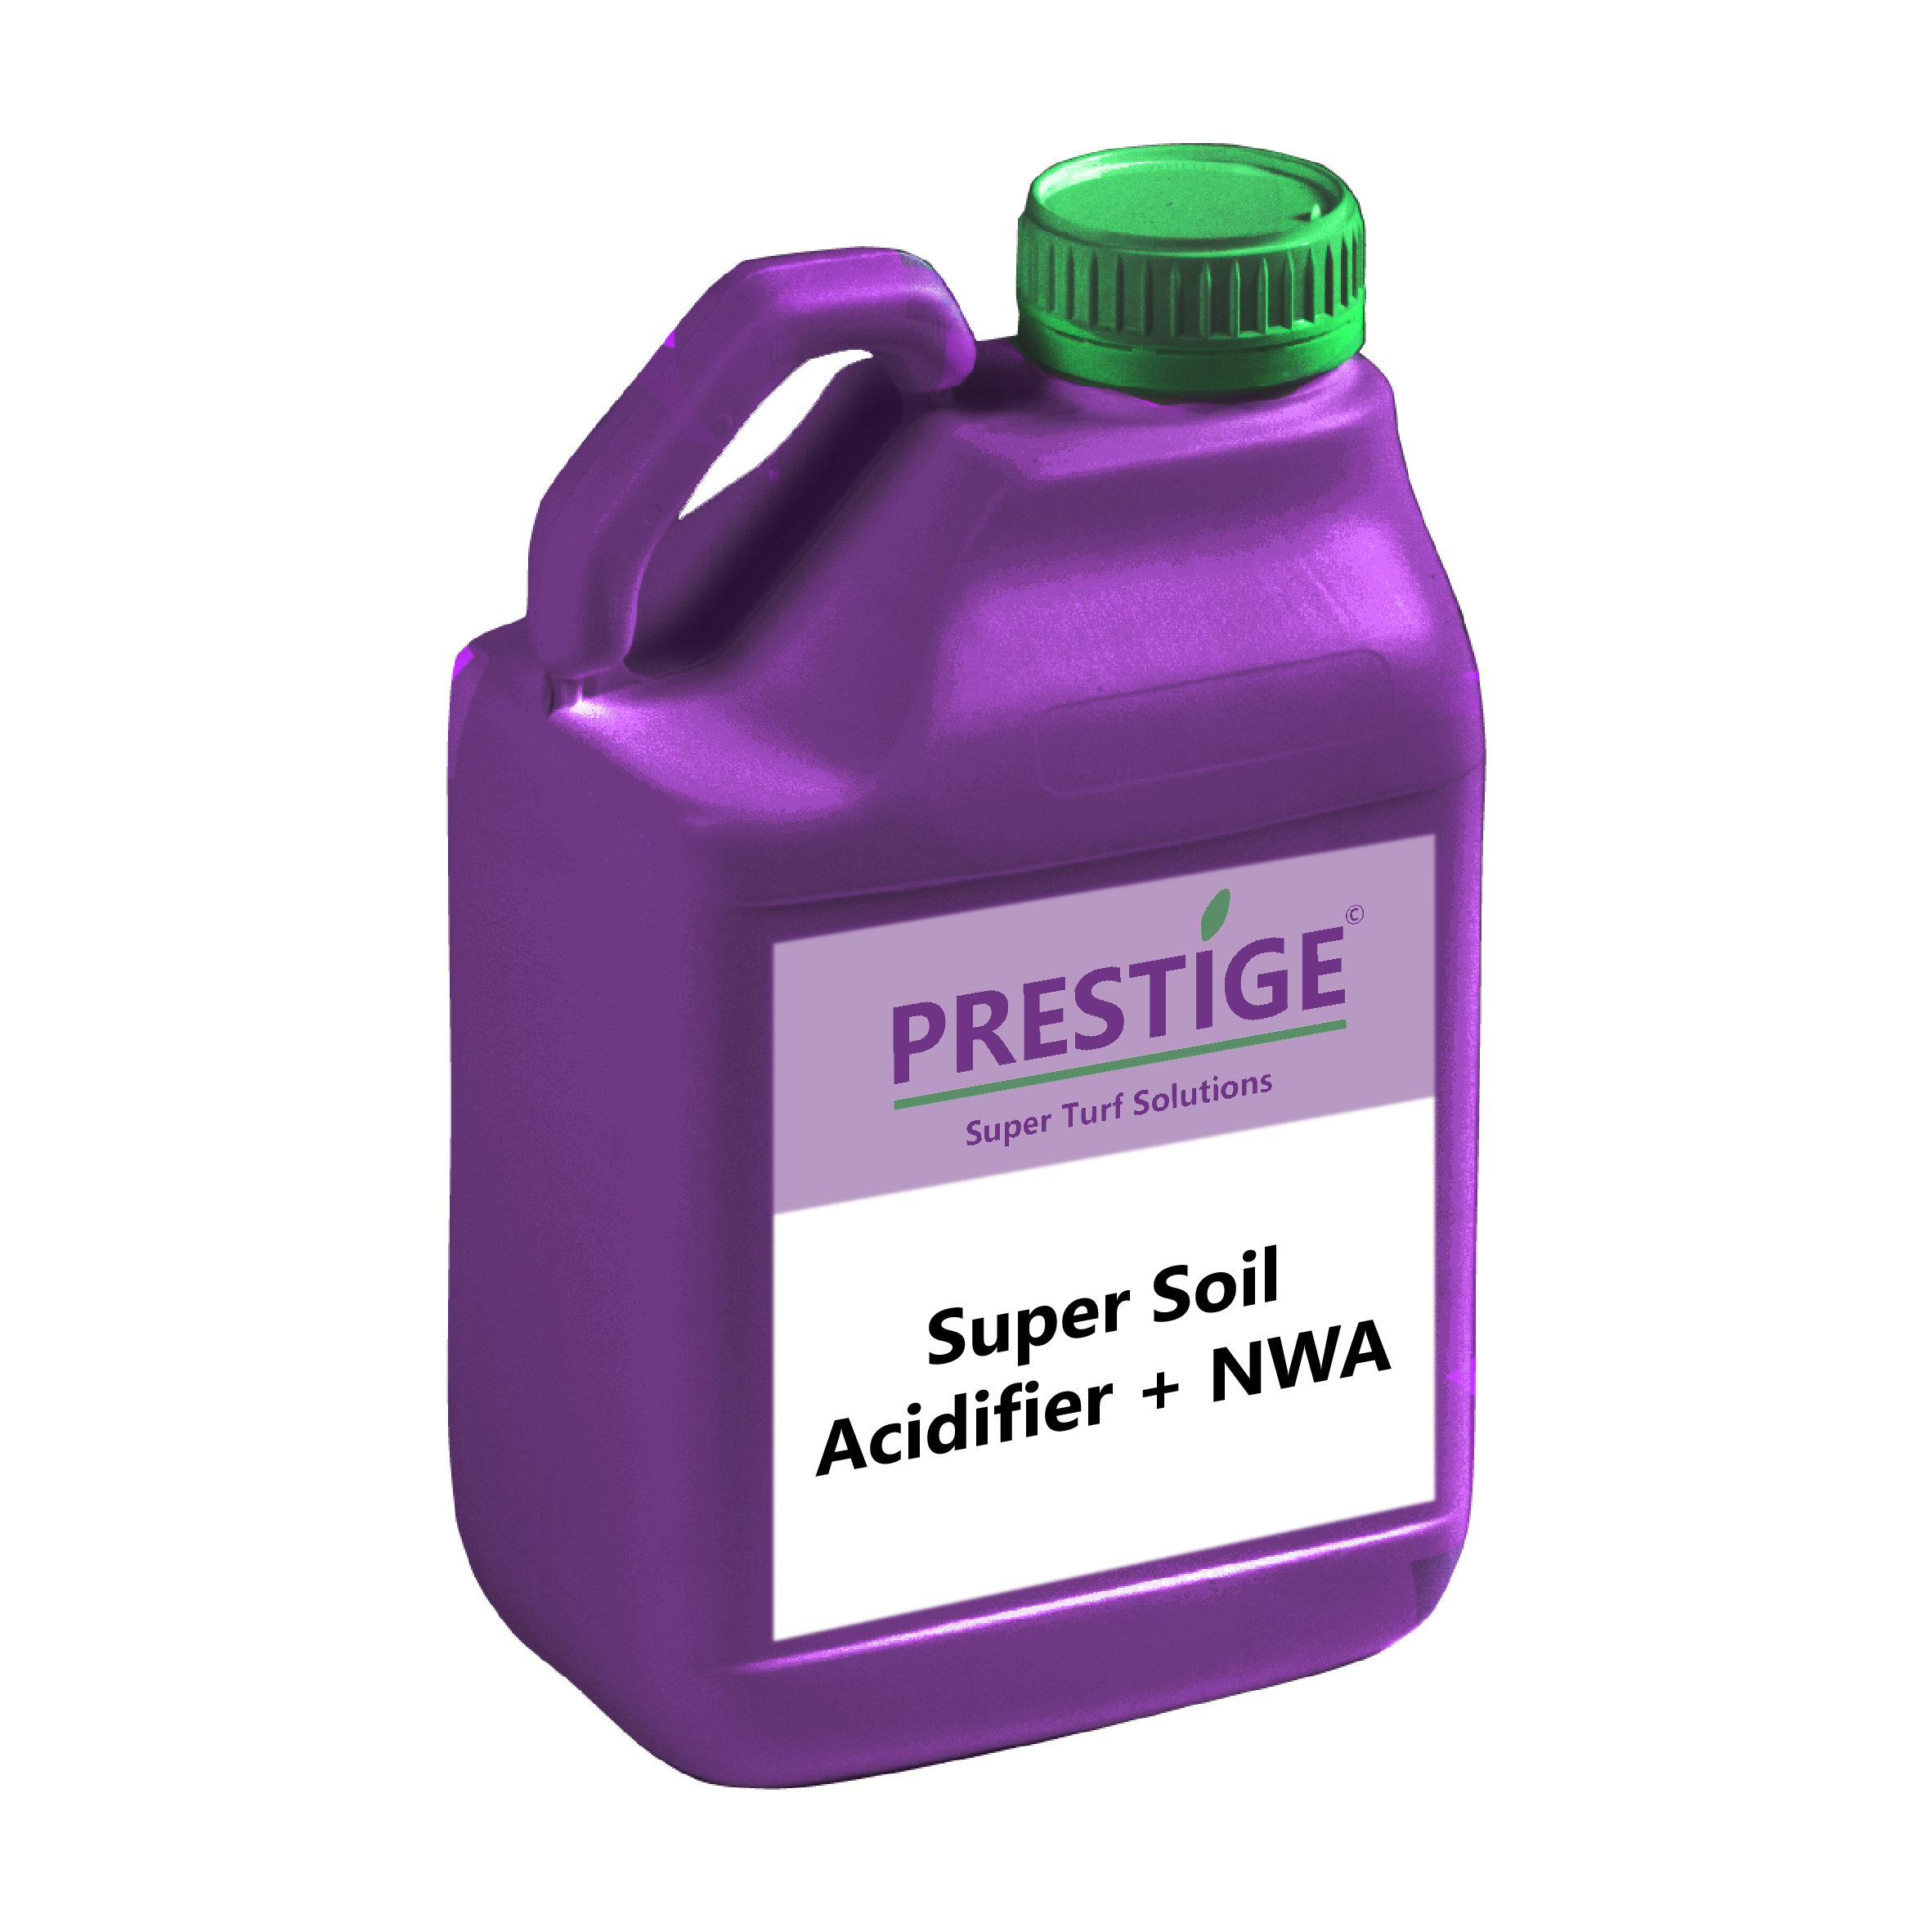 Prestige Super Soil Acidifier